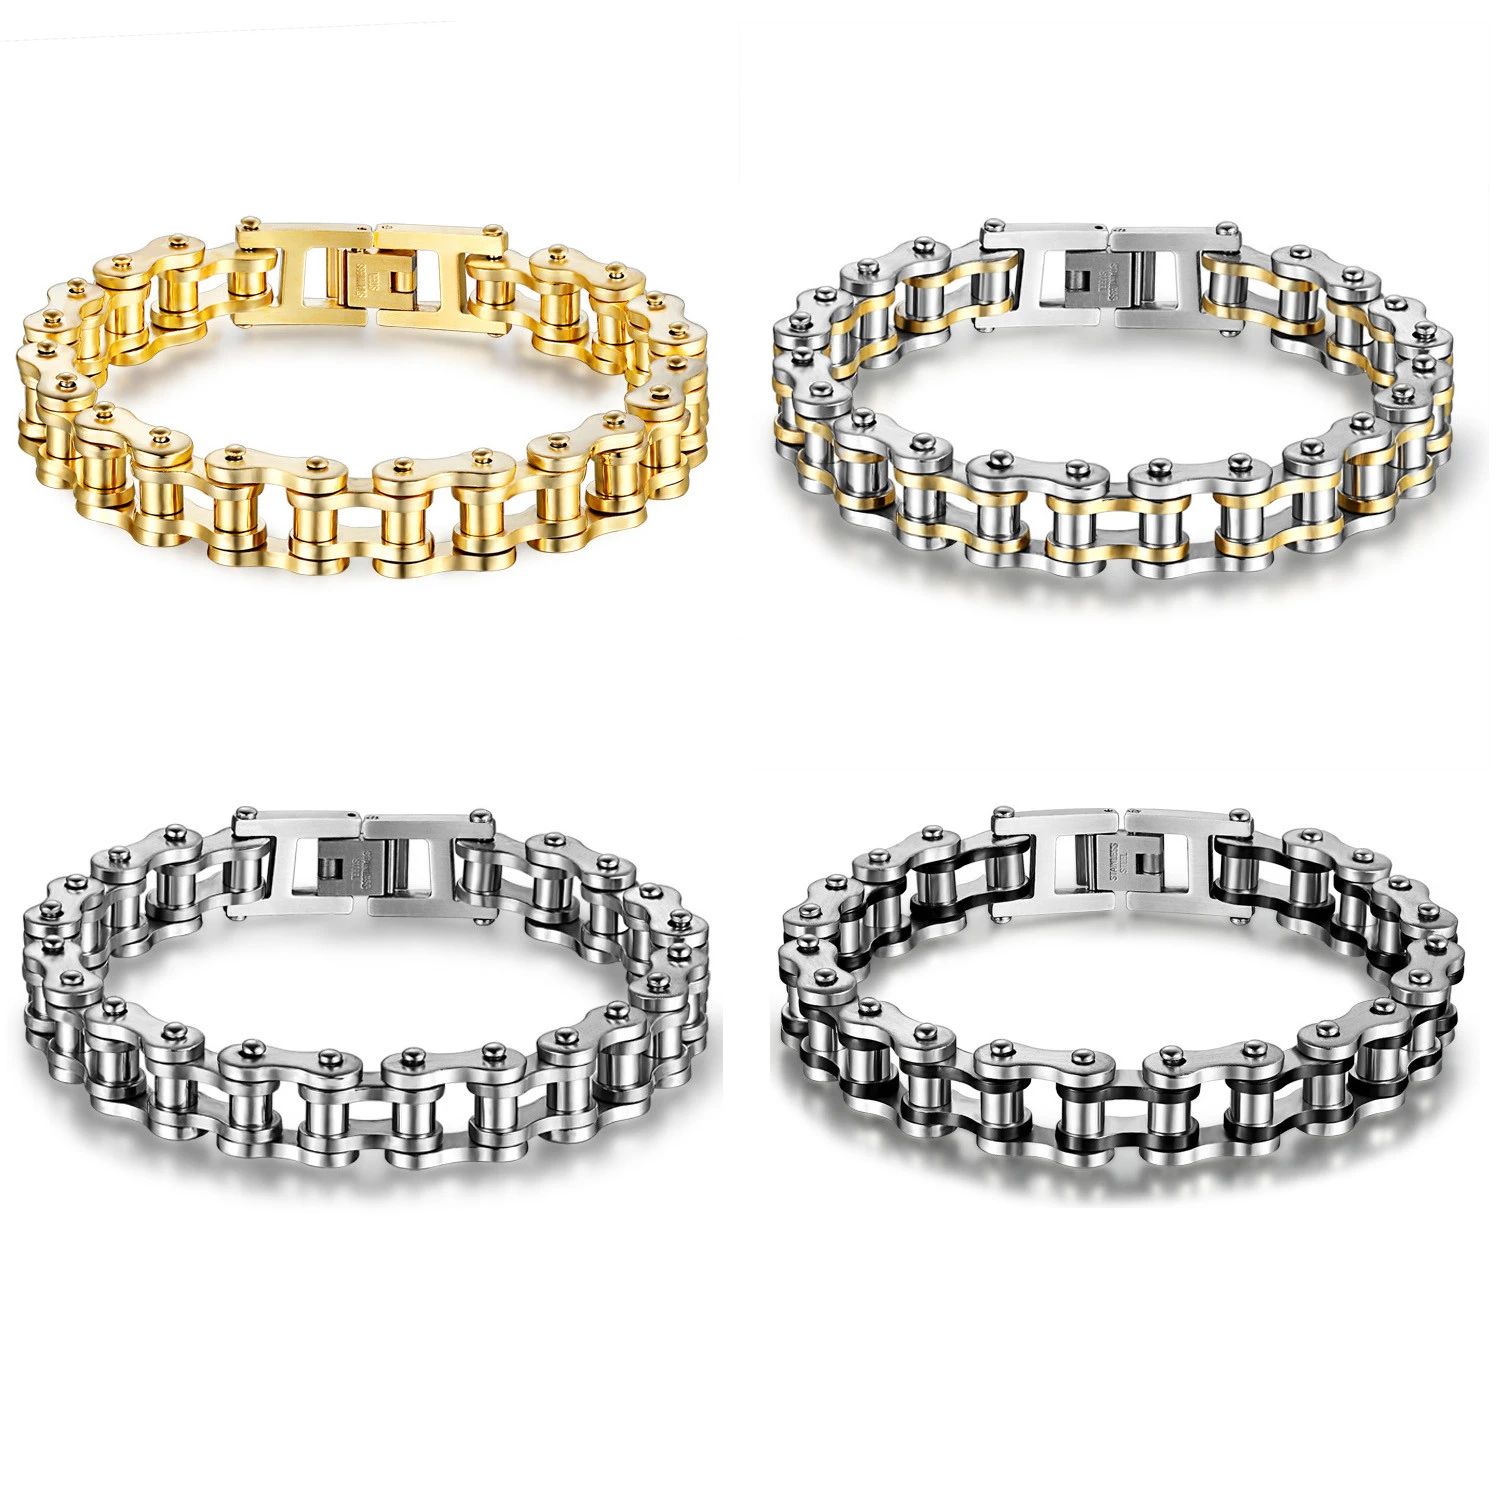 Best selling stainless steel chain bracelet men, biker jewelry bracelet men